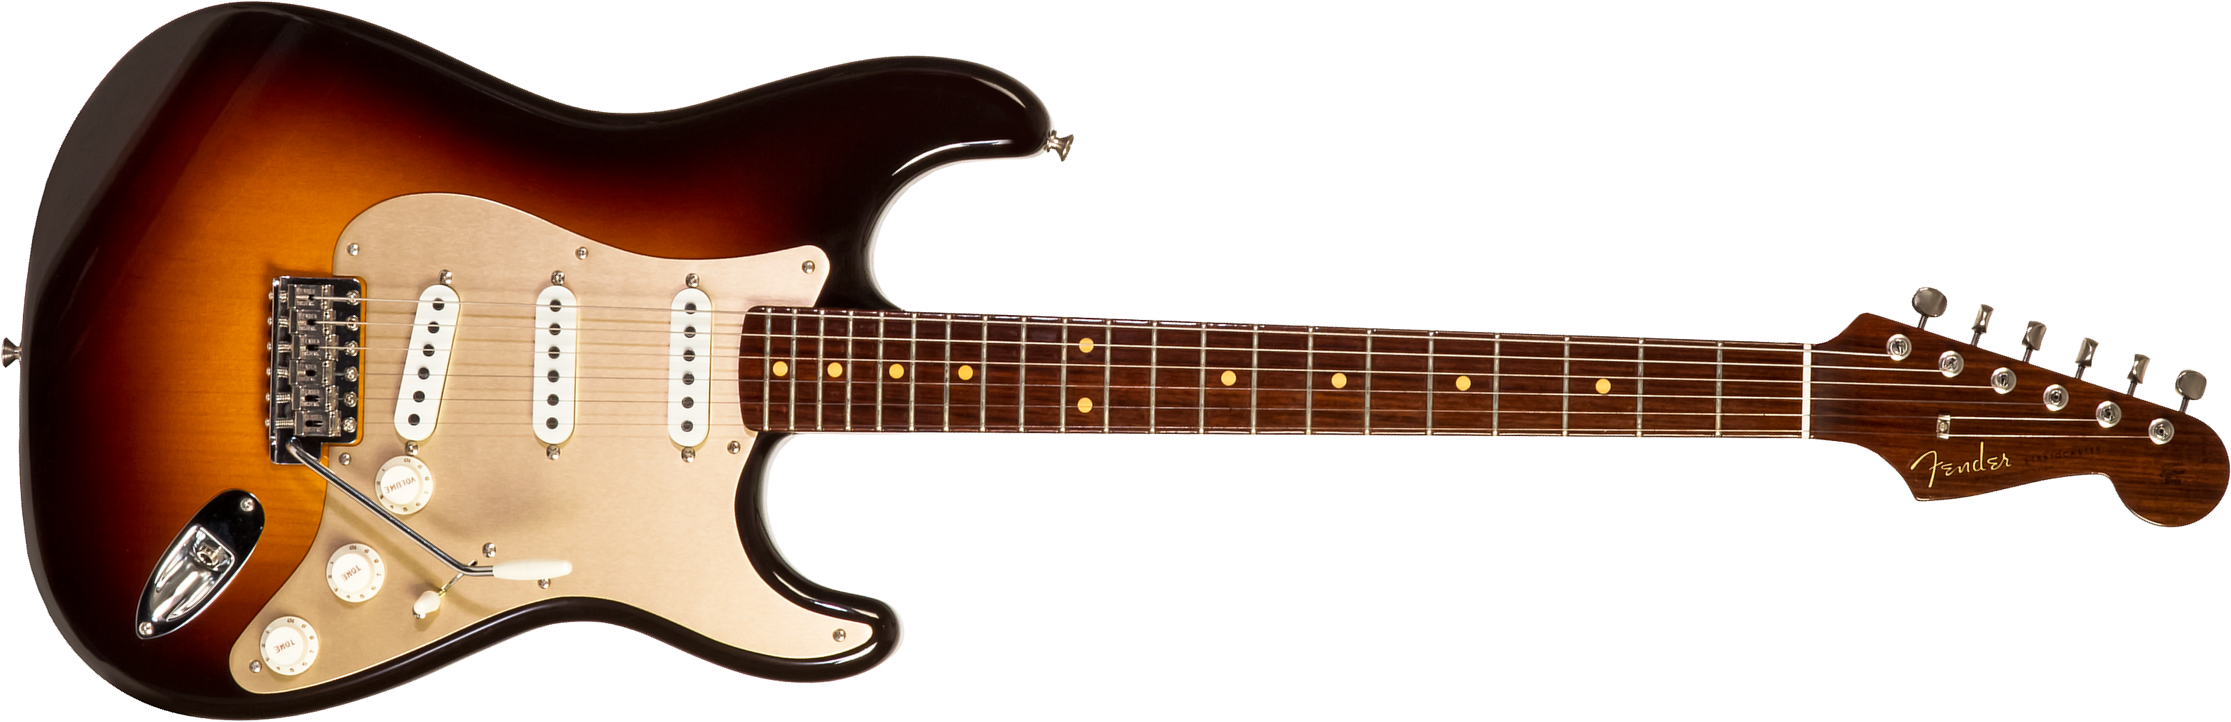 Fender Custom Shop Strat 1957 3s Trem Rw #cz548509 - Closet Classic 2-color Sunburst - Tel shape electric guitar - Main picture